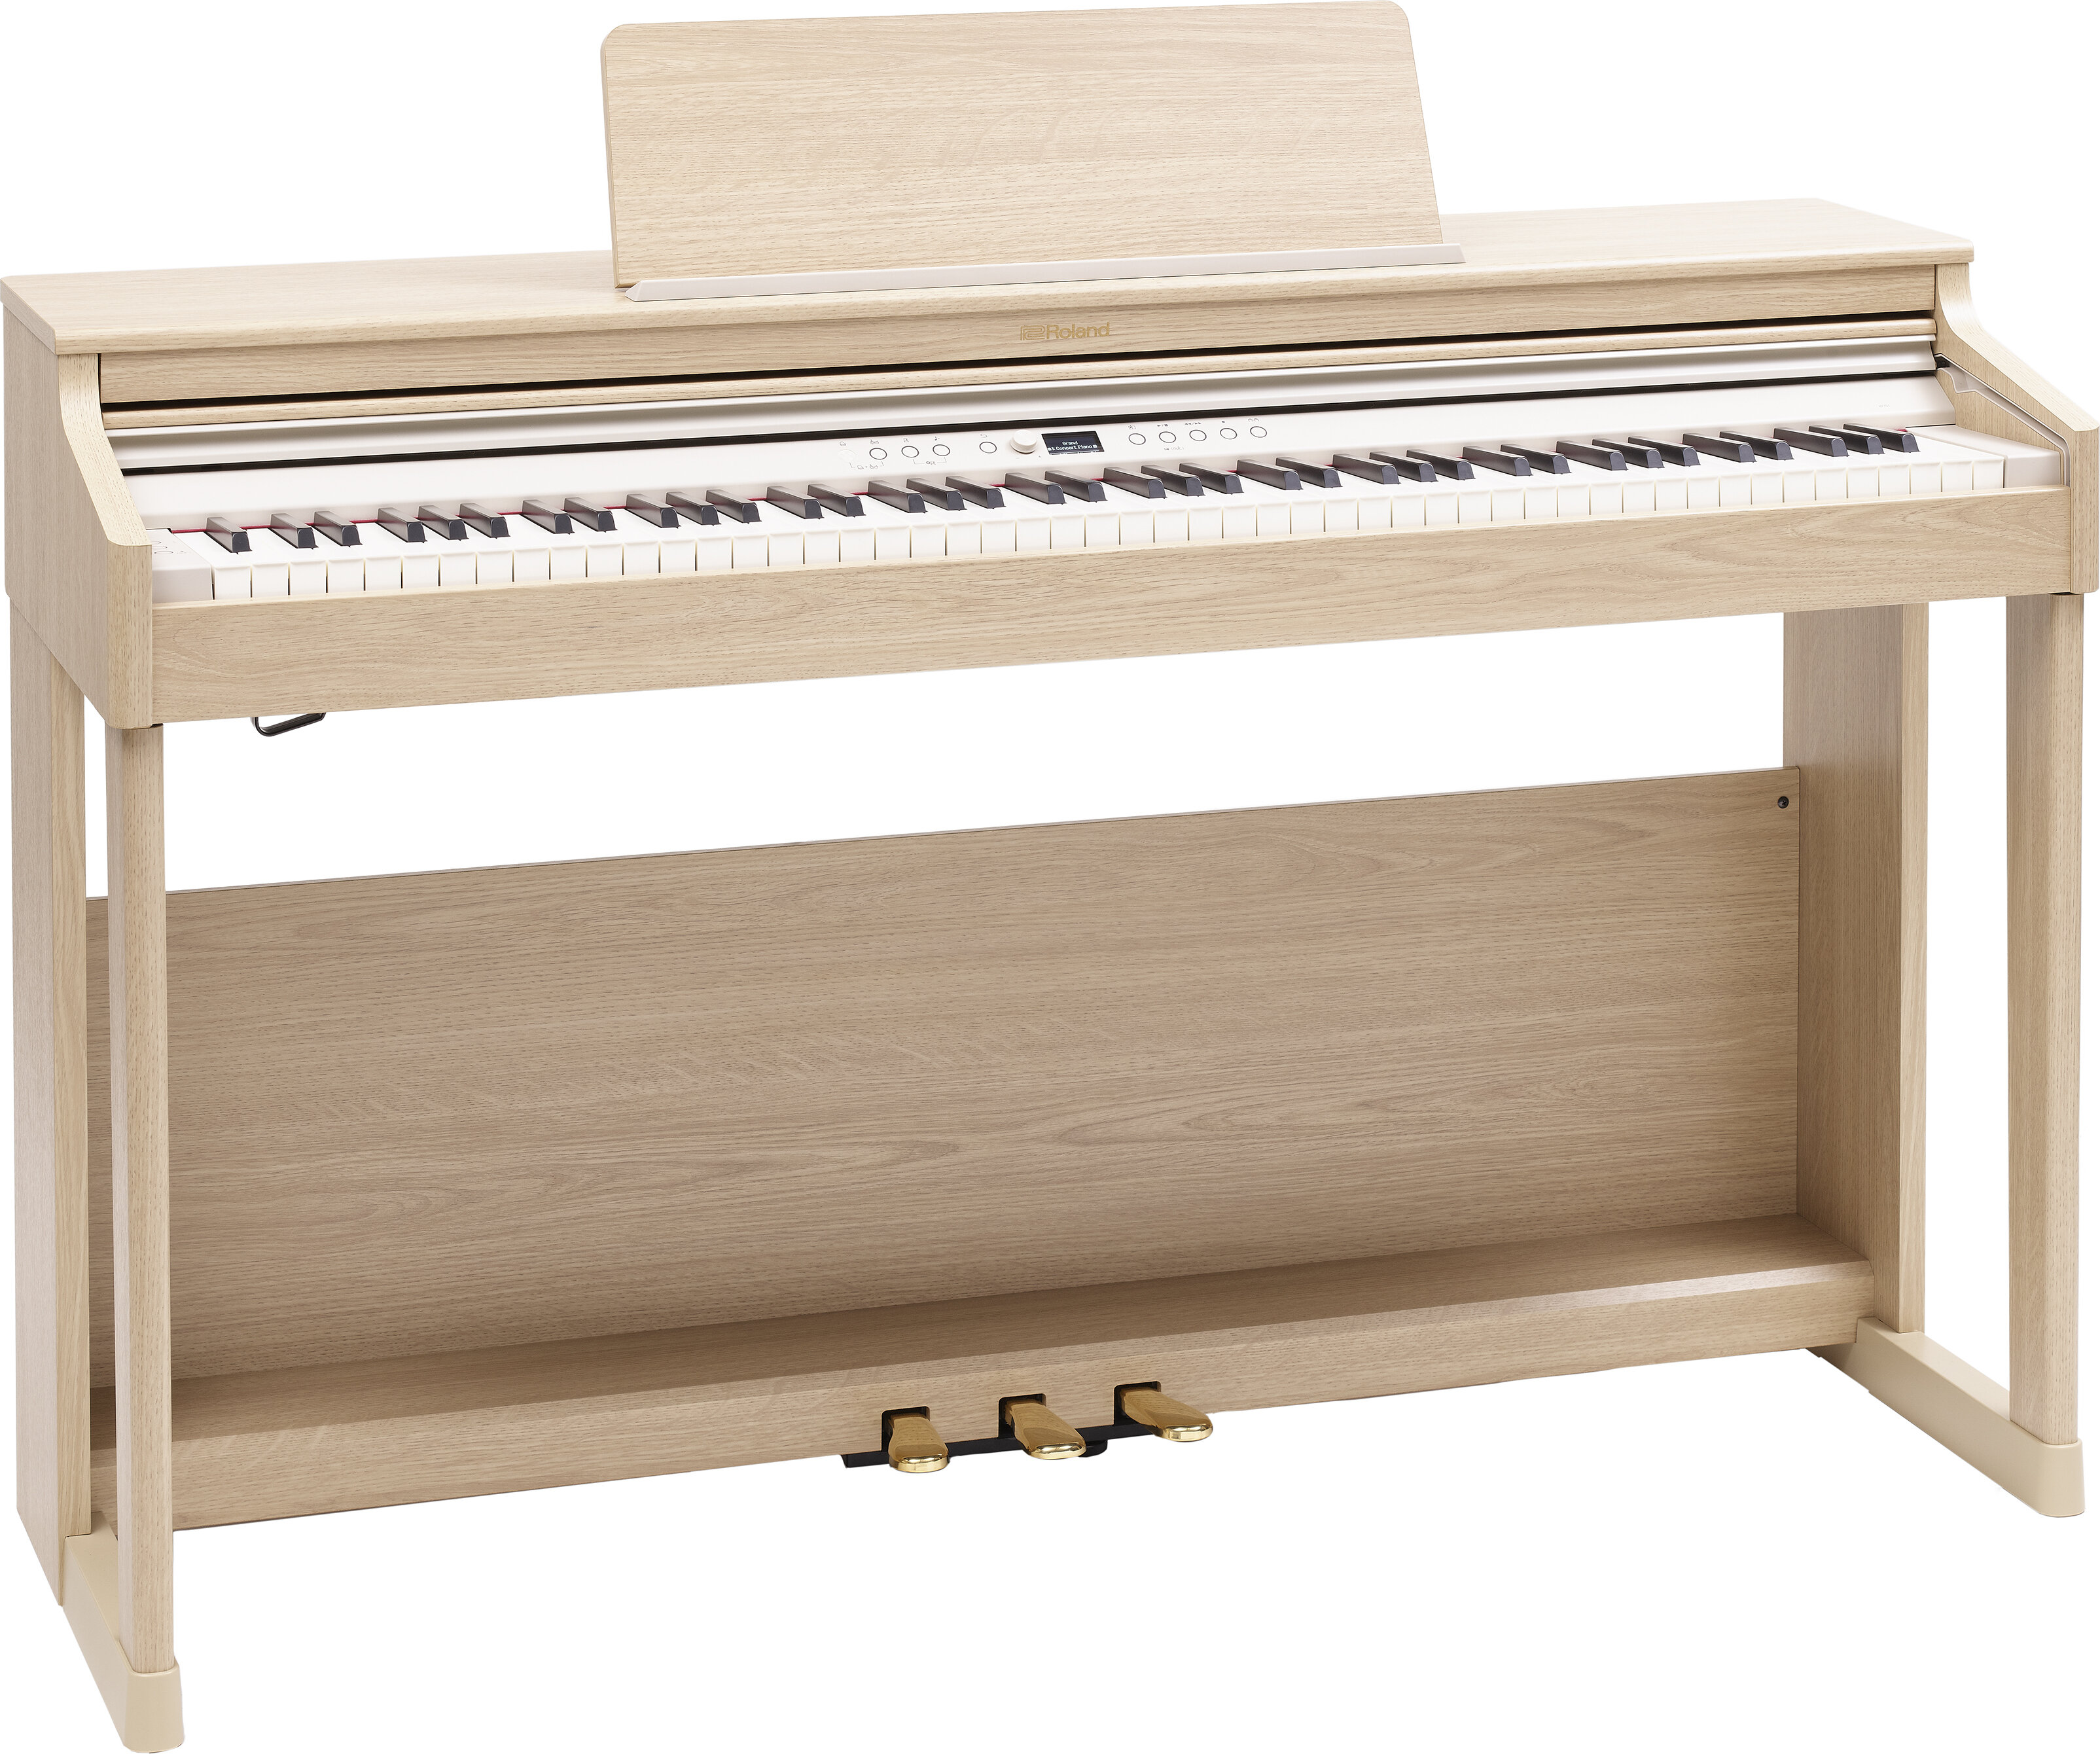 Roland RP701 Digital Piano in Light Oak -  RP701-LA